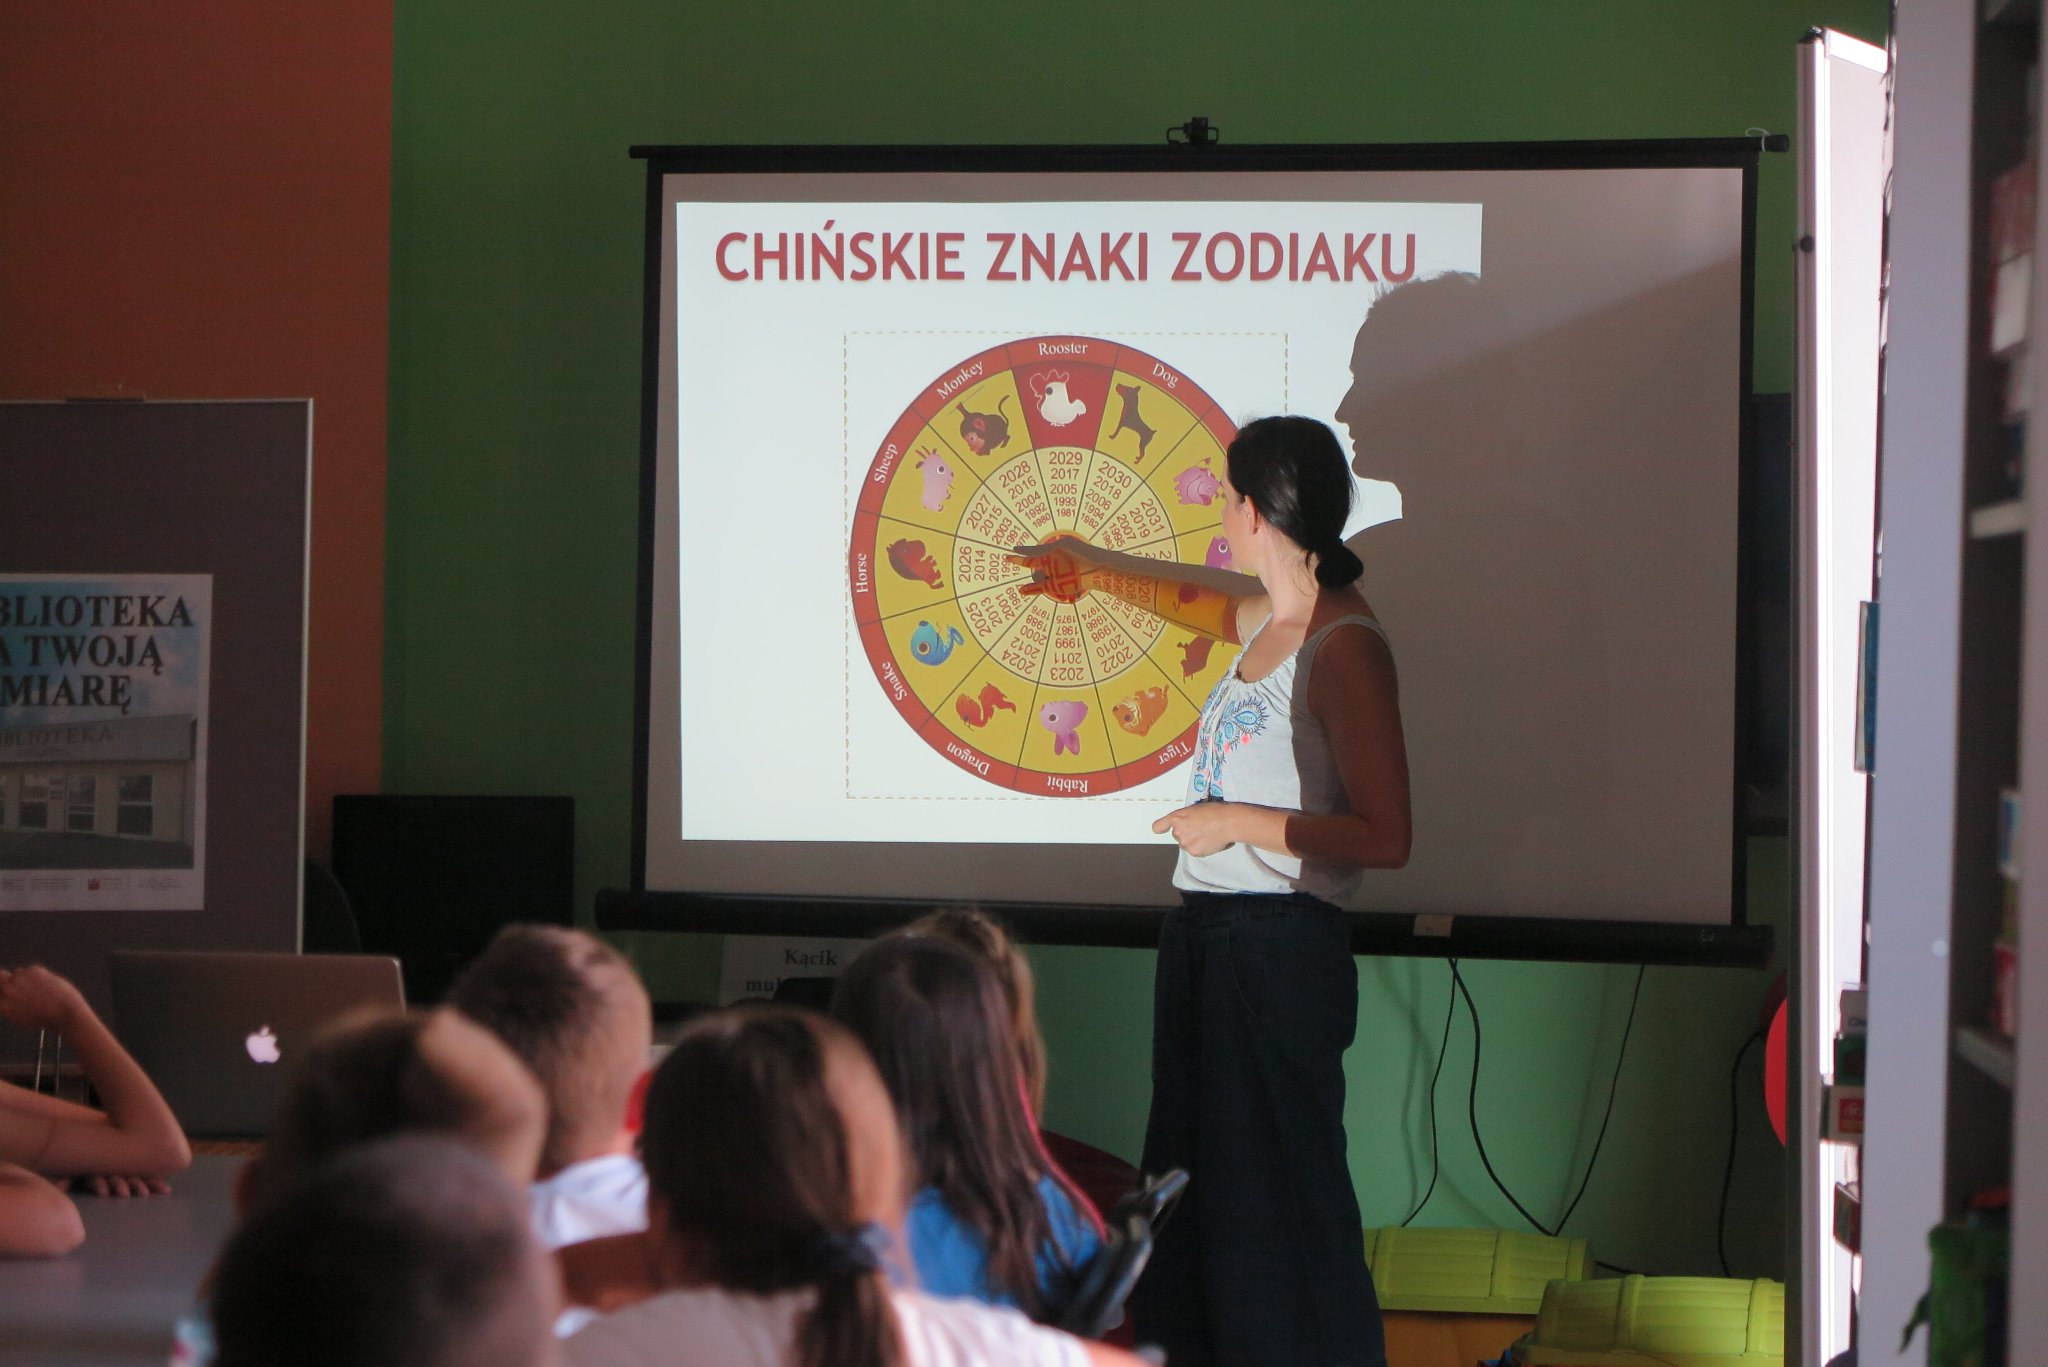 uczestnicy warsztatów podróżniczych z Anną Jaklewicz poznają chińskie znaki zodiaku, oglądają na ekranie projektora  obraz ze znakami zodiaku w oddziale dla dzieci